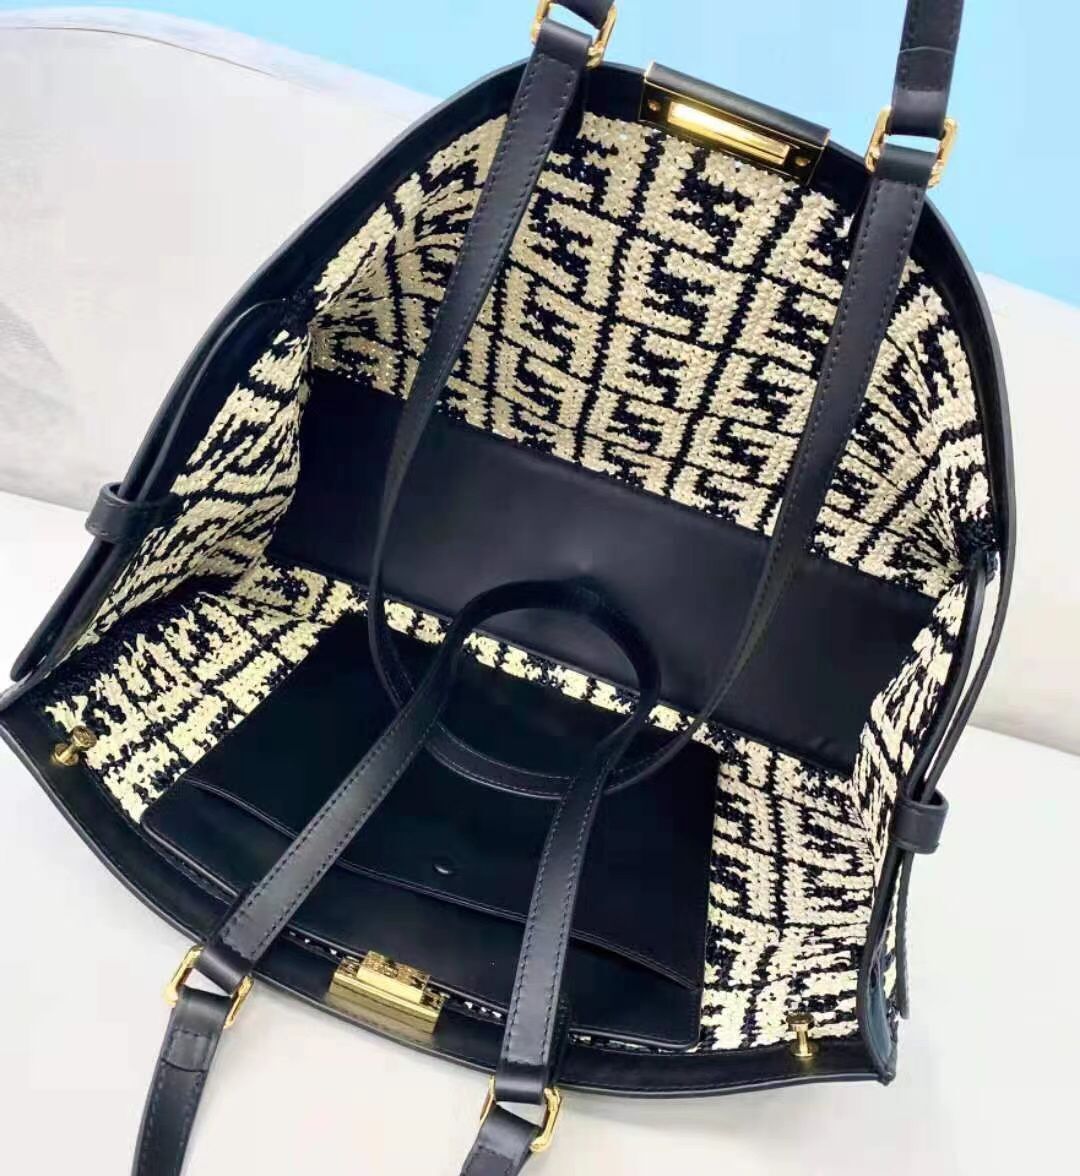 FENDI PEEKABOO ICONIC  leather bag 8BN244 black&white